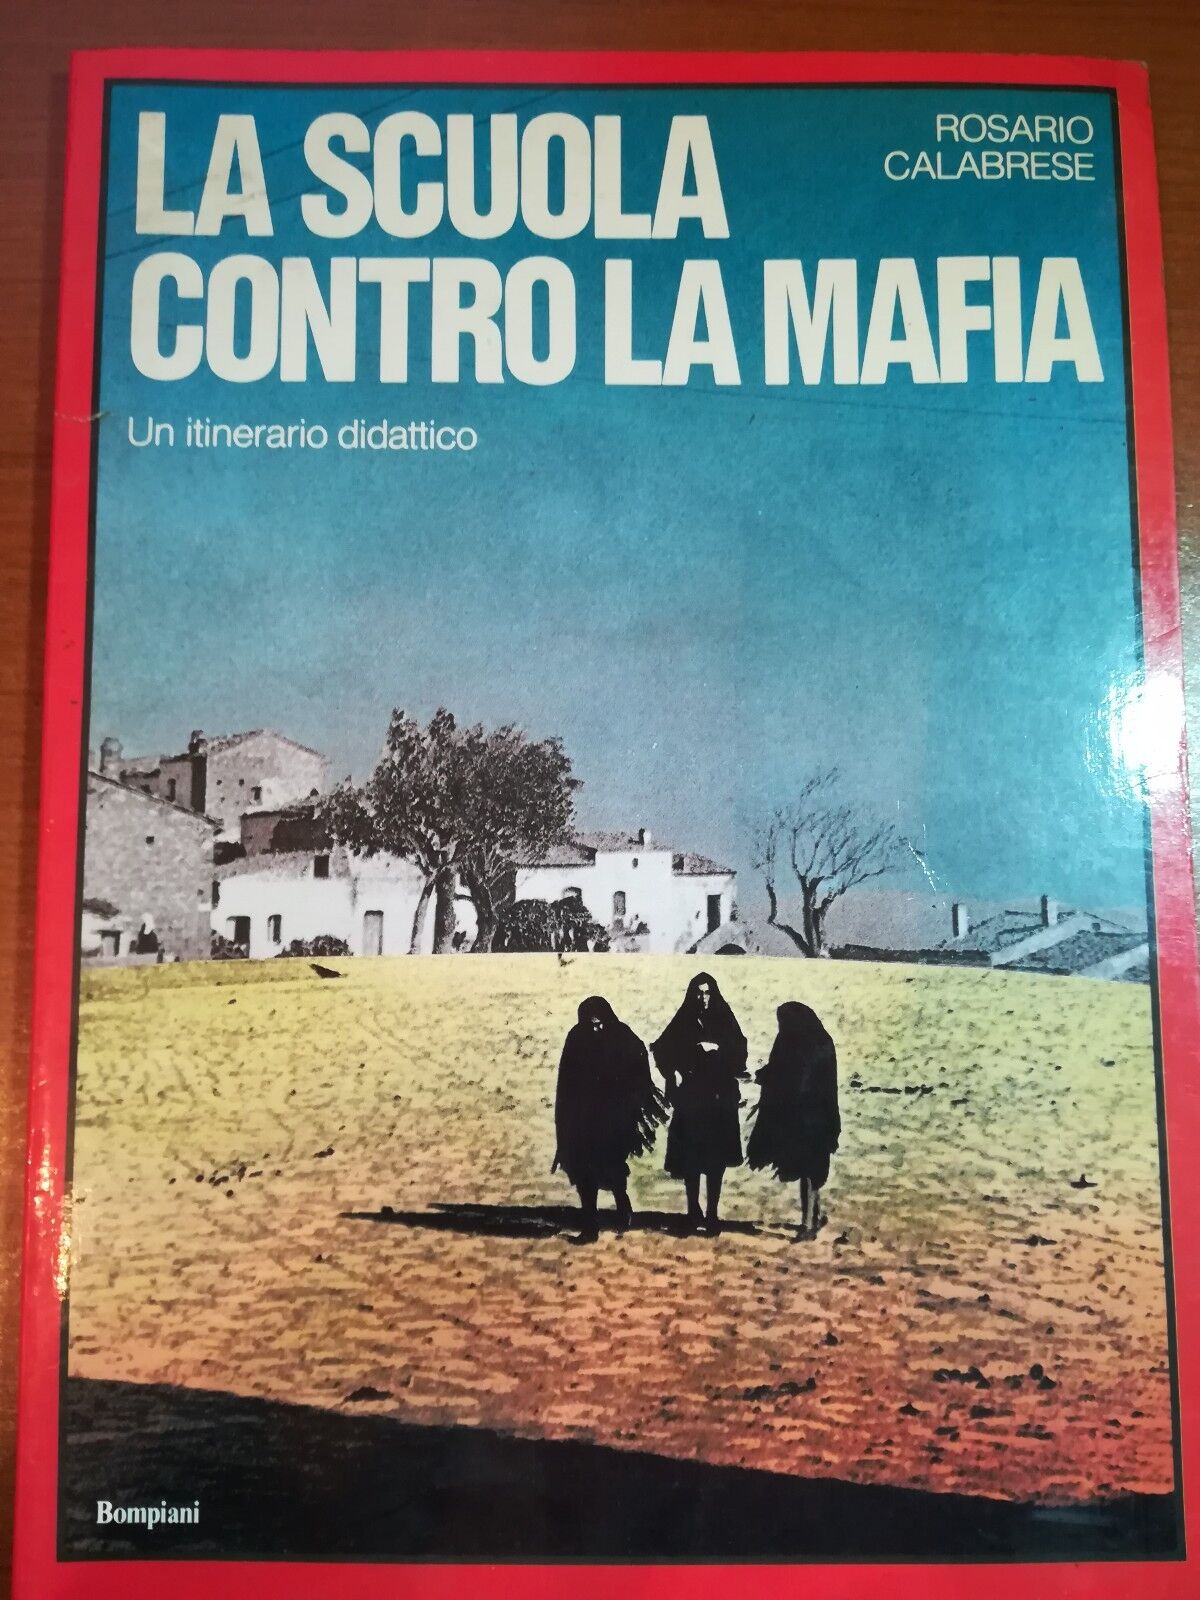 La scuola contro la mafia - Rosario Calabrese - Bompiani - 1987 -M